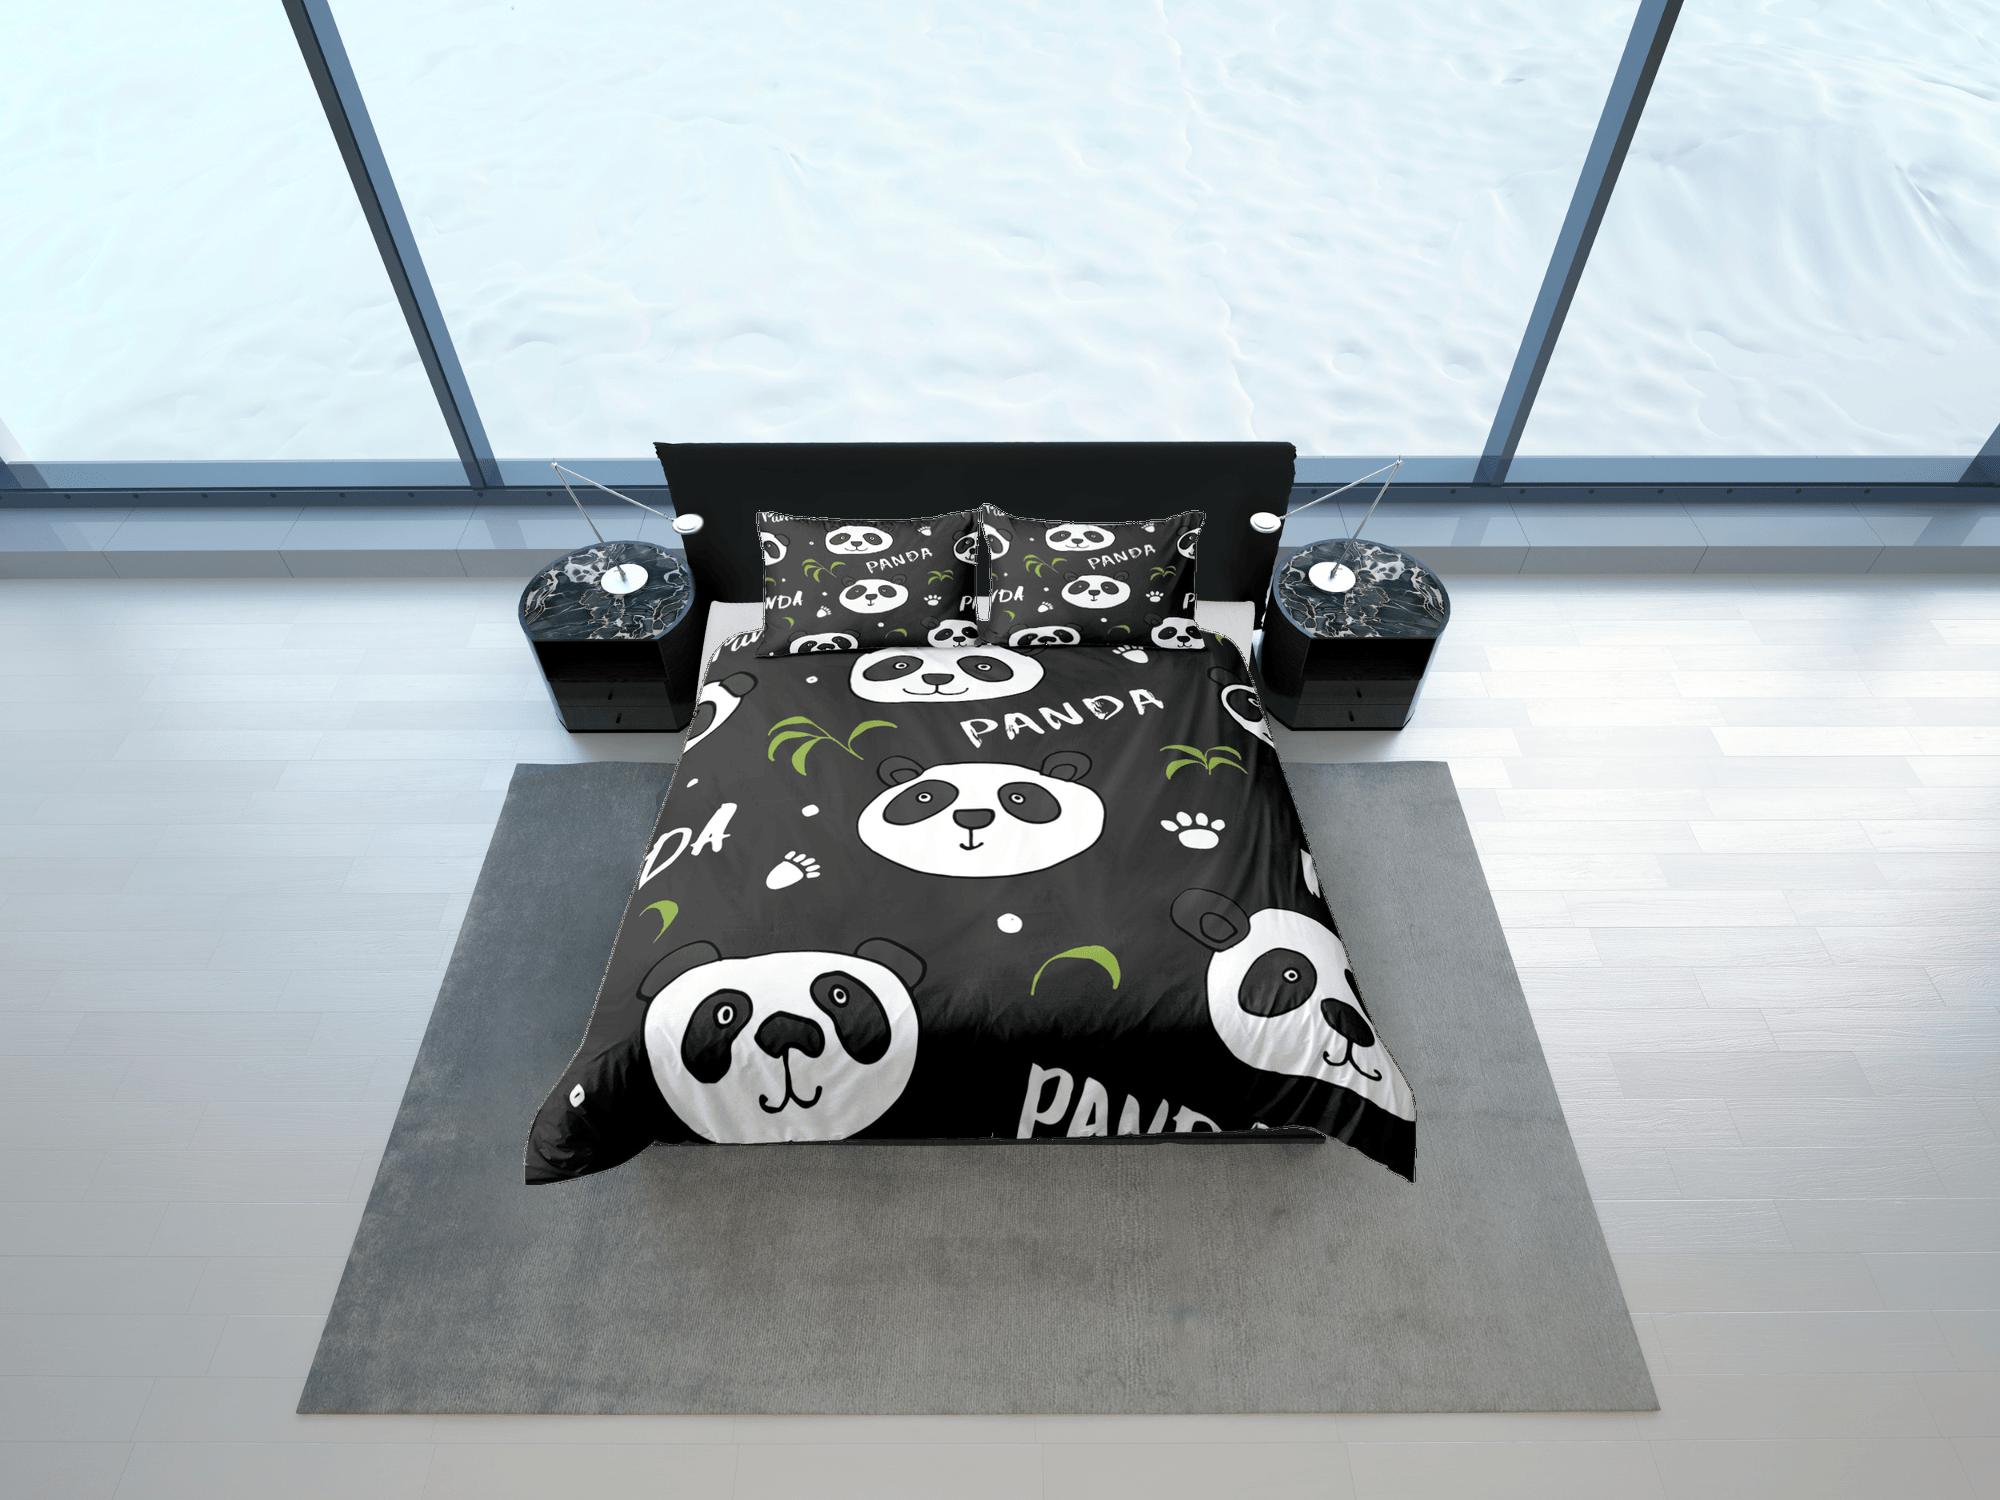 daintyduvet Panda paws black duvet cover for kids, bedding set full, king, queen, dorm bedding, toddler bedding, aesthetic bedspread, panda lovers gift